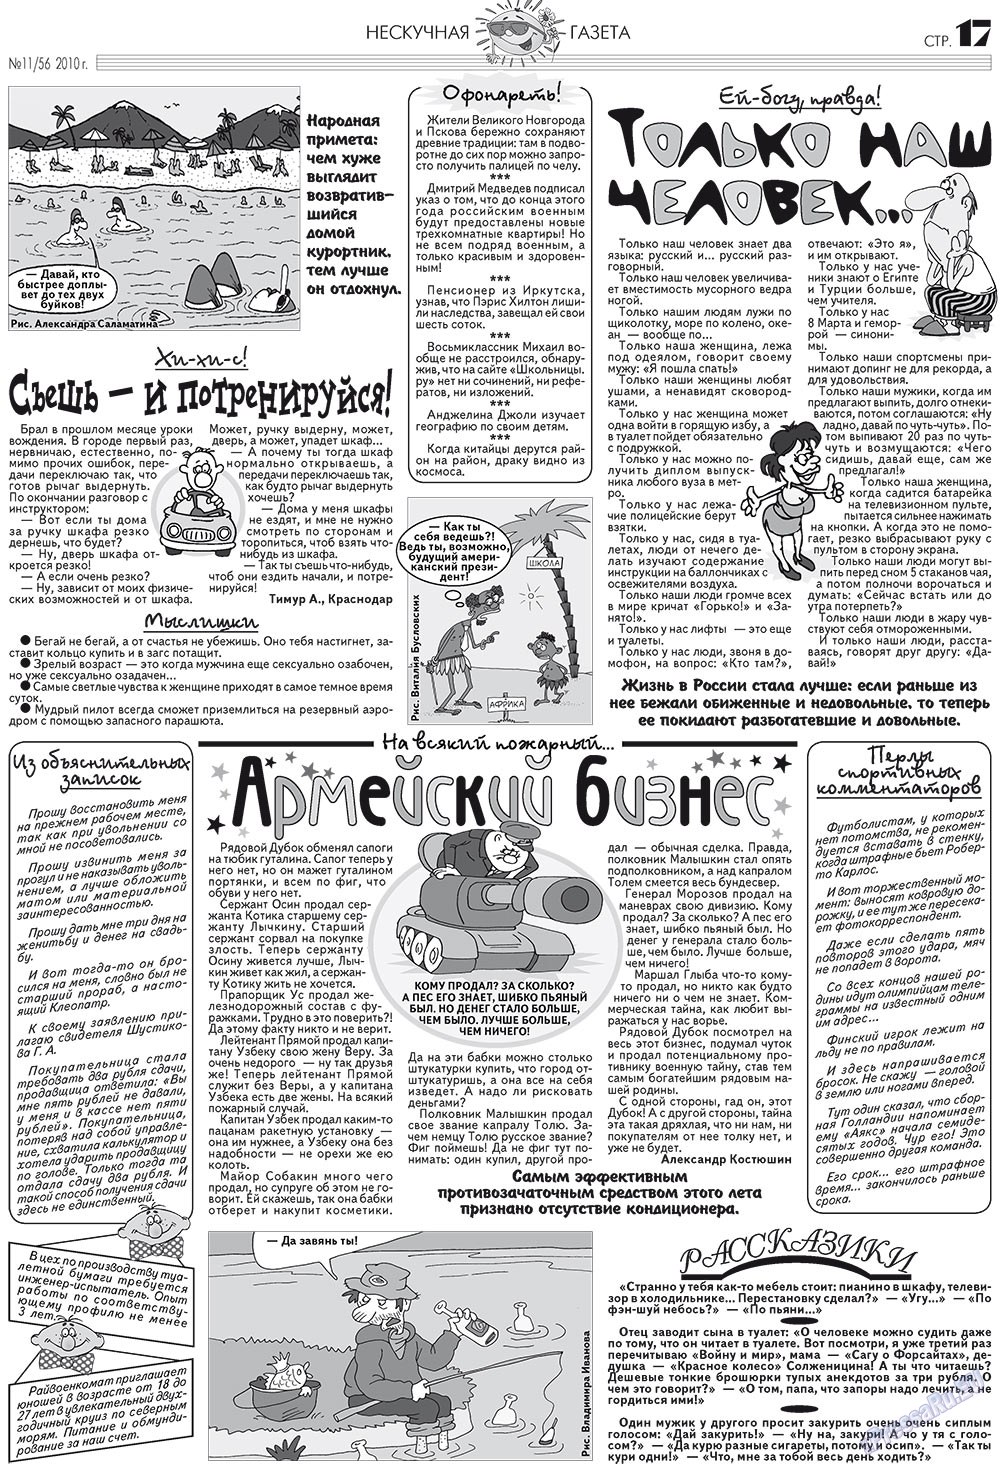 Нескучная газета, журнал. 2010 №11 стр.17